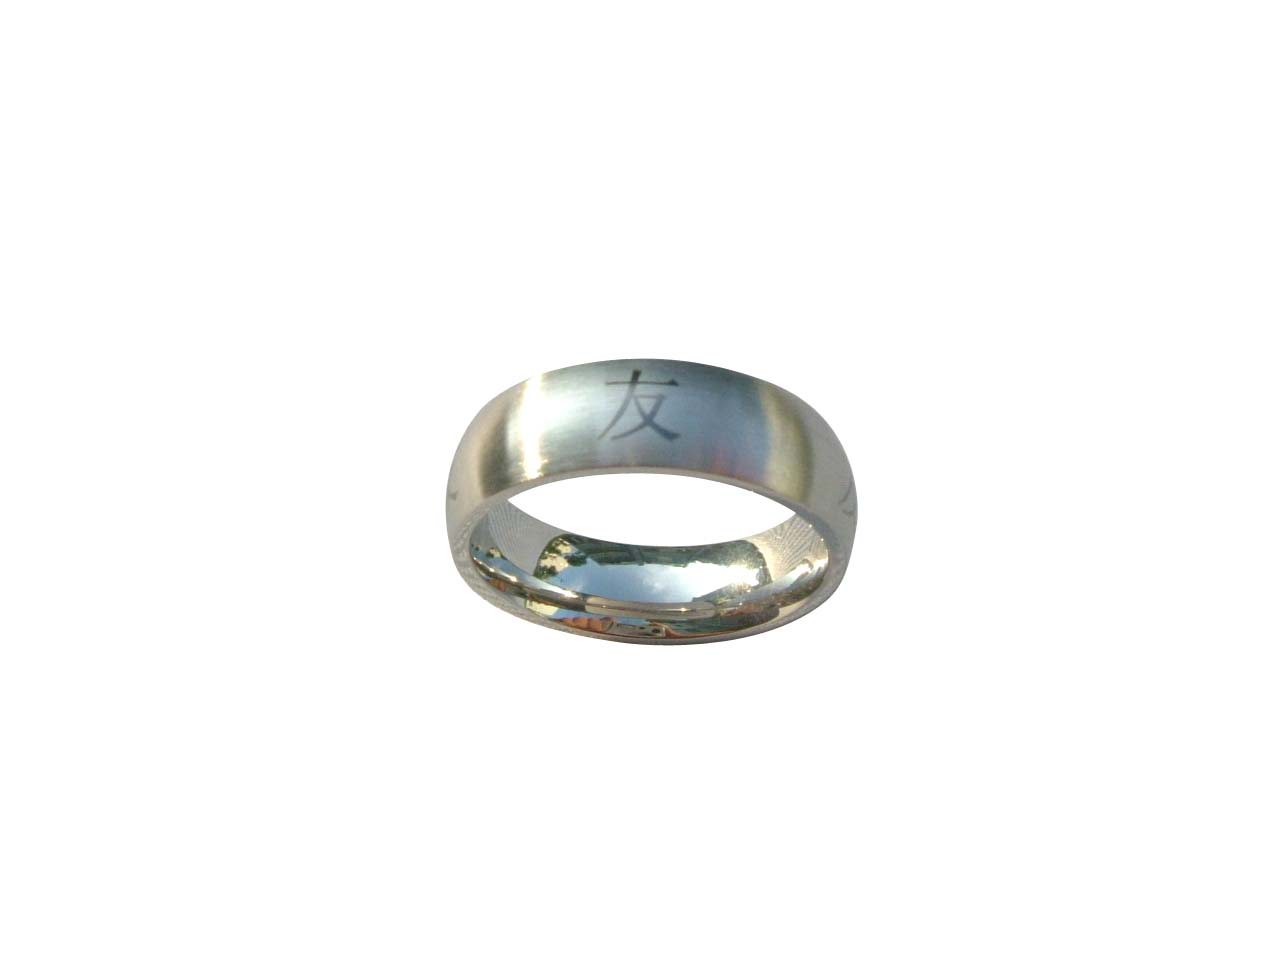  S. S Jewellery Ring